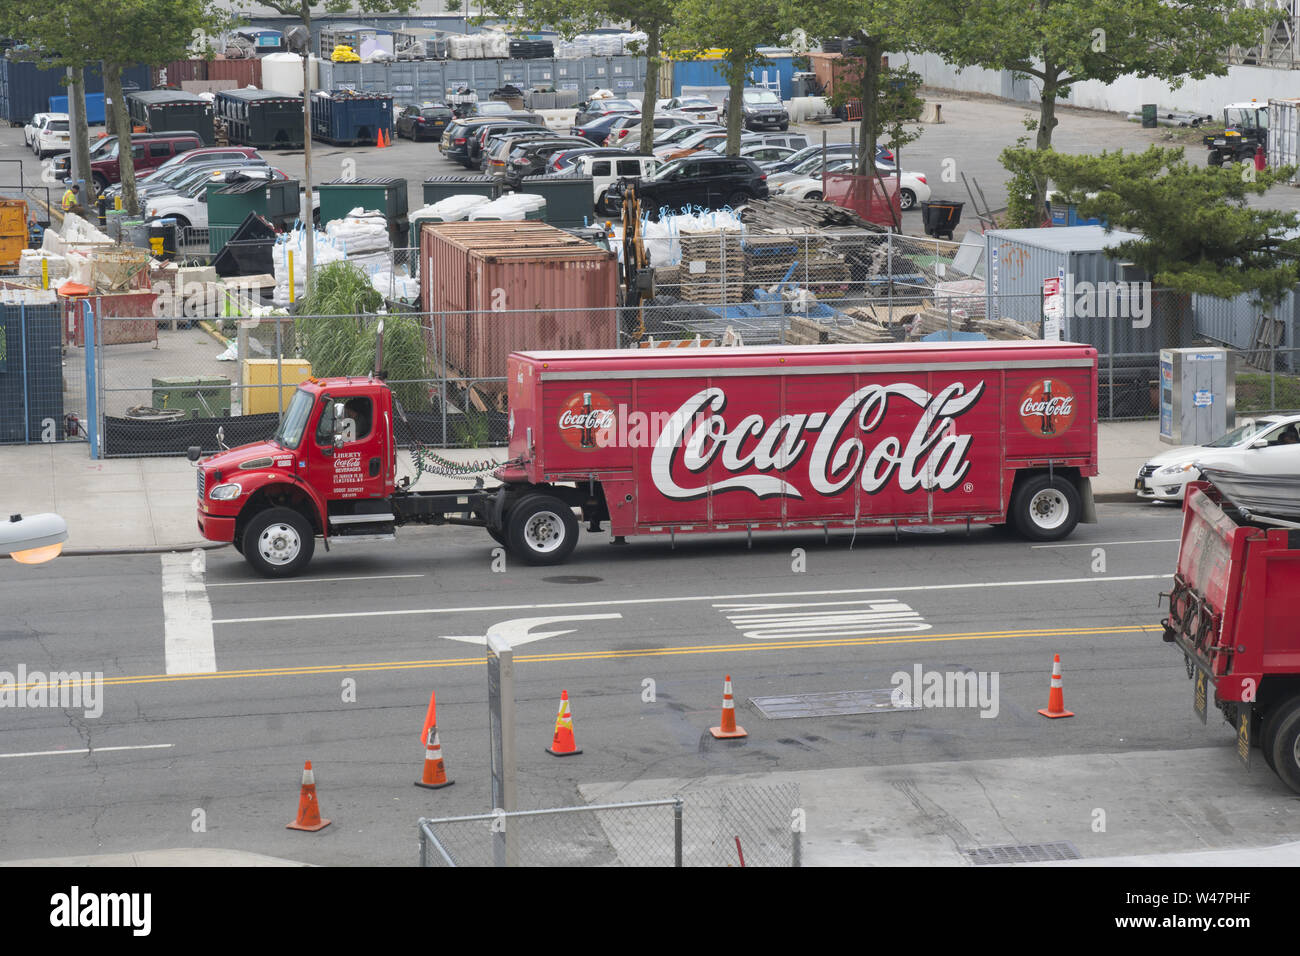 Coca-Cola consegna carrello con il suo classico logo lungo il lato. Surf Avenue, Coney Island, Brooklyn, New York. Foto Stock